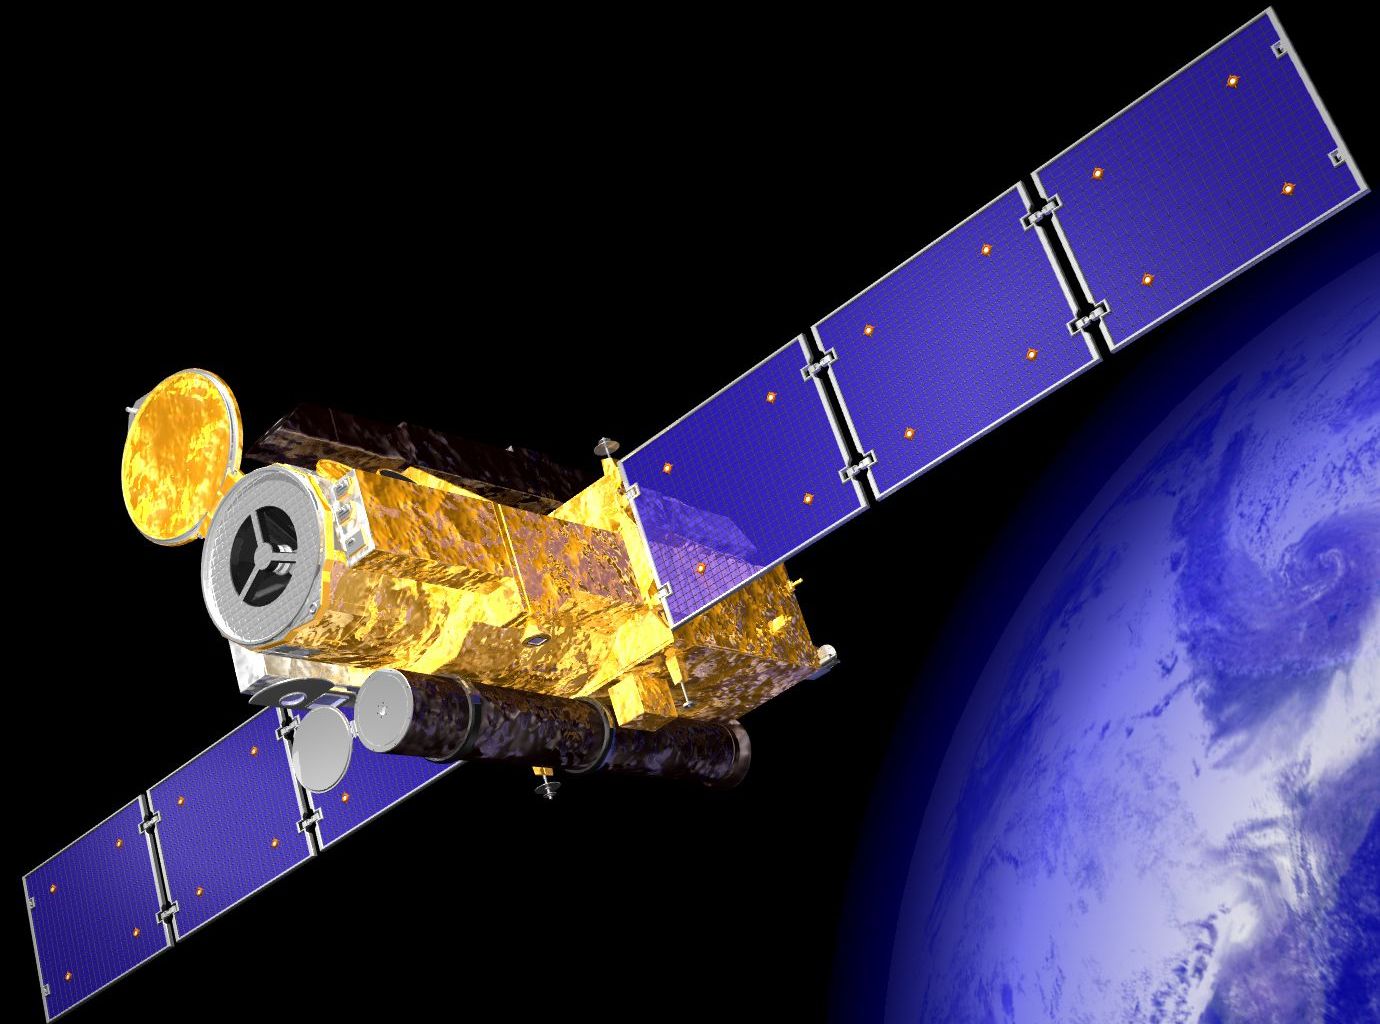 La sonde spatiale japonaise Hinode, destinée à l'exploration du Soleil, a été lancée en 2006 et continue à envoyer des données vers la Terre depuis une orbite autour du Soleil. La mission observe les régions du Soleil qui produisent des éruptions solaires et du vent solaire. Louise Harra a joué et joue encore un rôle important dans la mission.